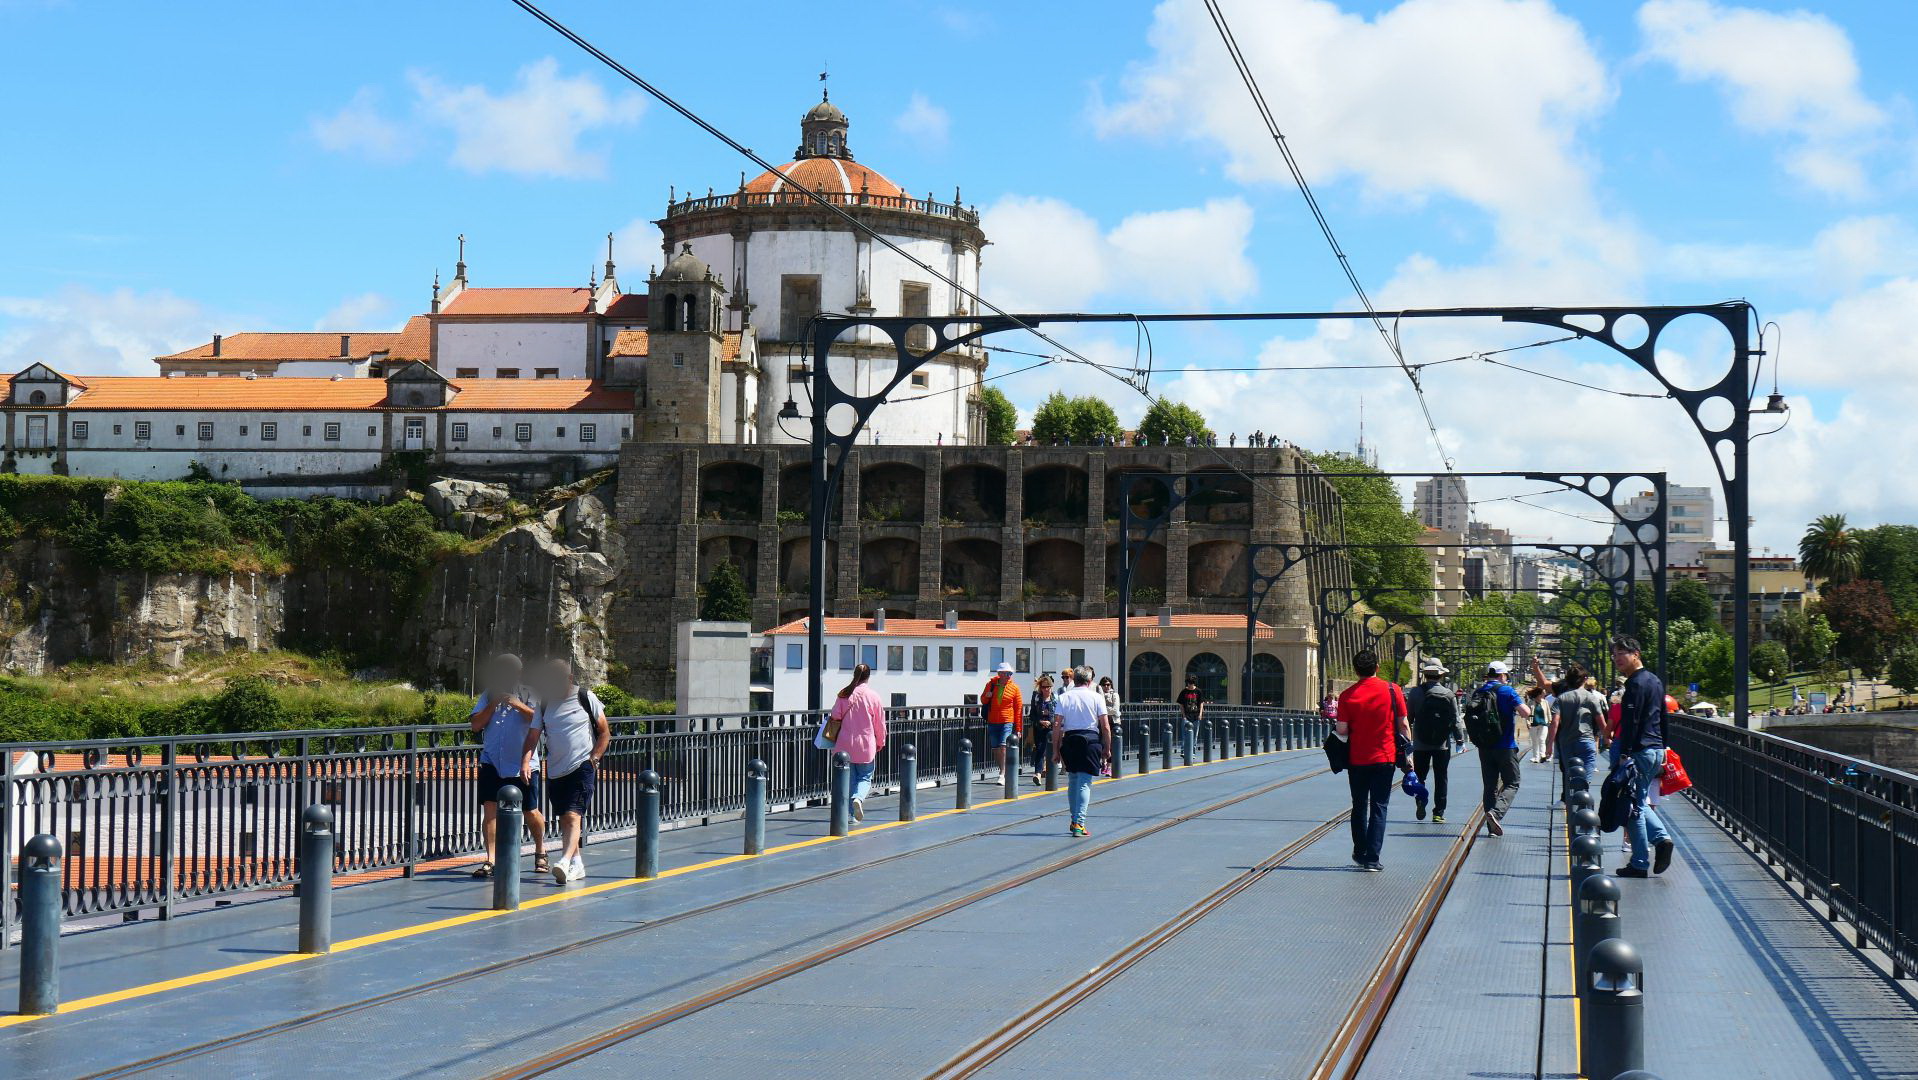 PORTO - wir laufen über die obere Etage der großen Brücke hinüber nach Porto